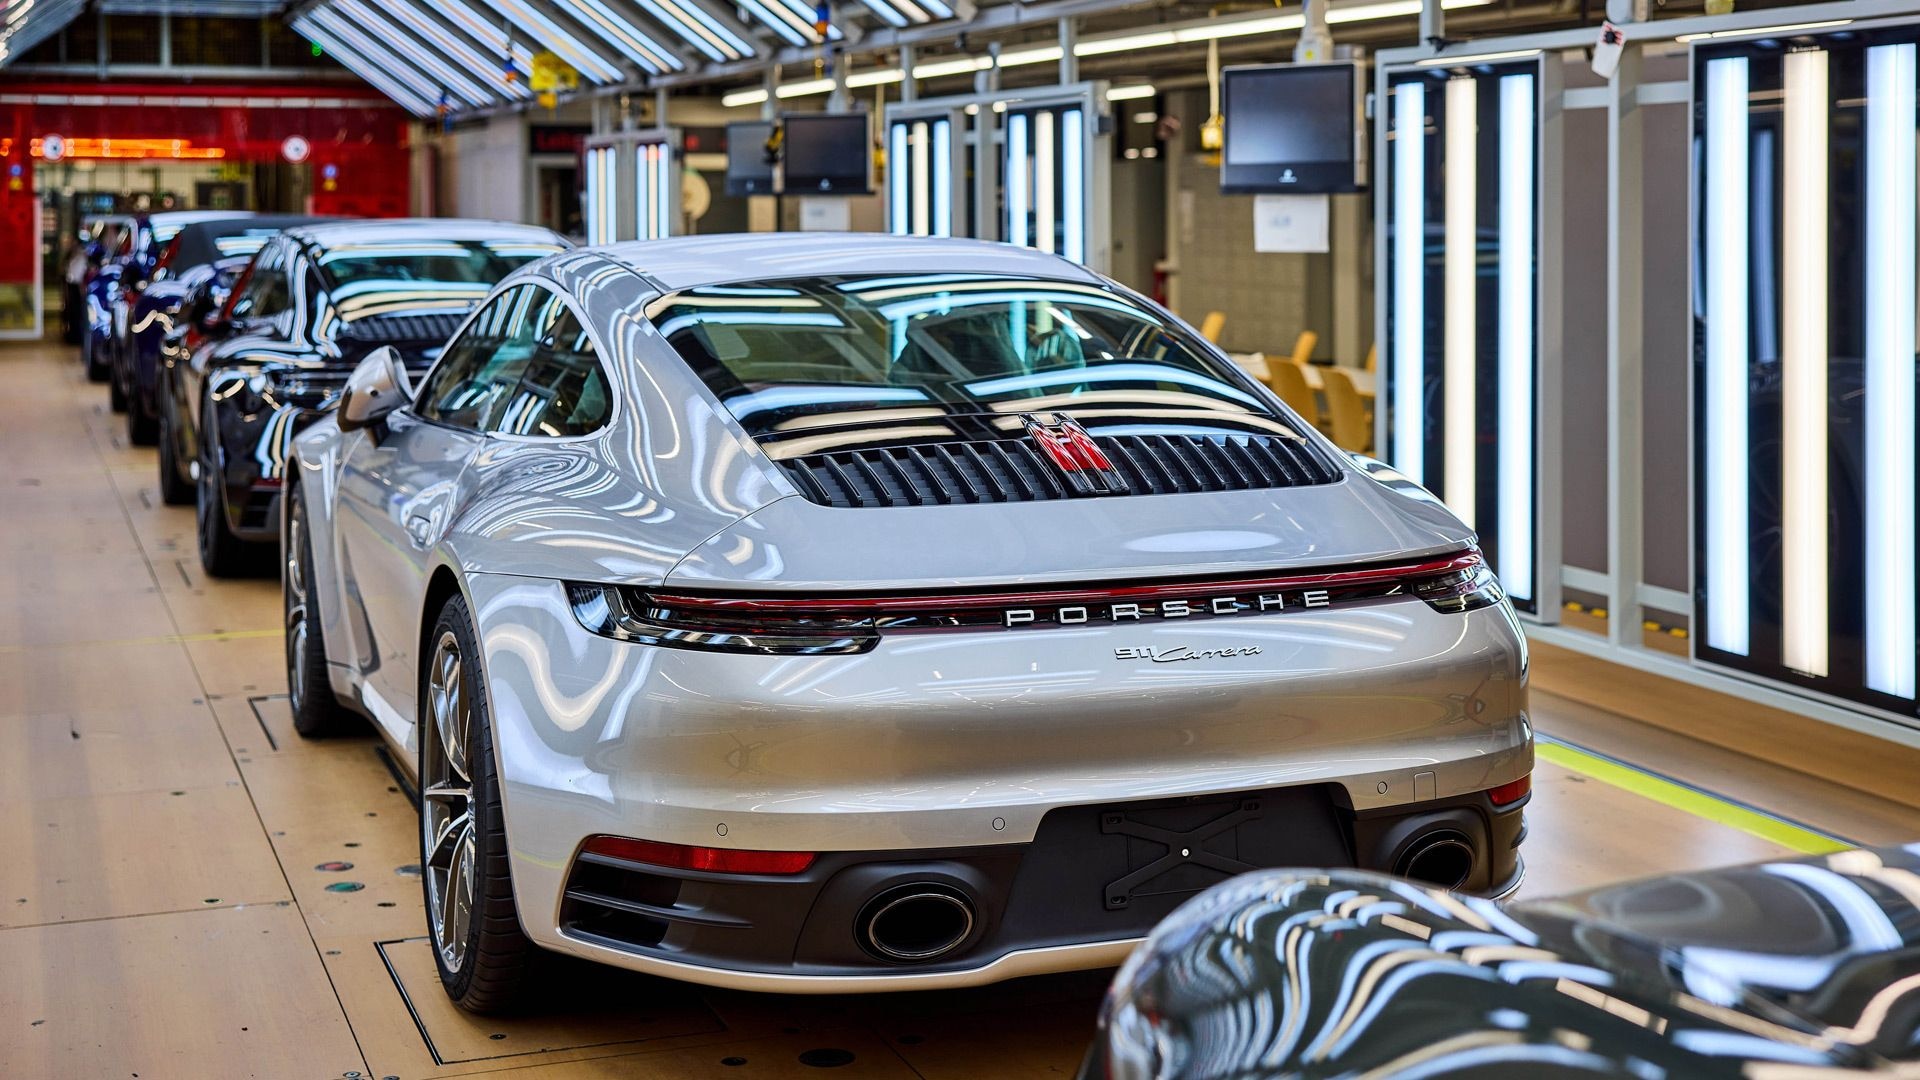 992-generation Porsche 911 production at plant in Stuttgart-Zuffenhausen, Germany